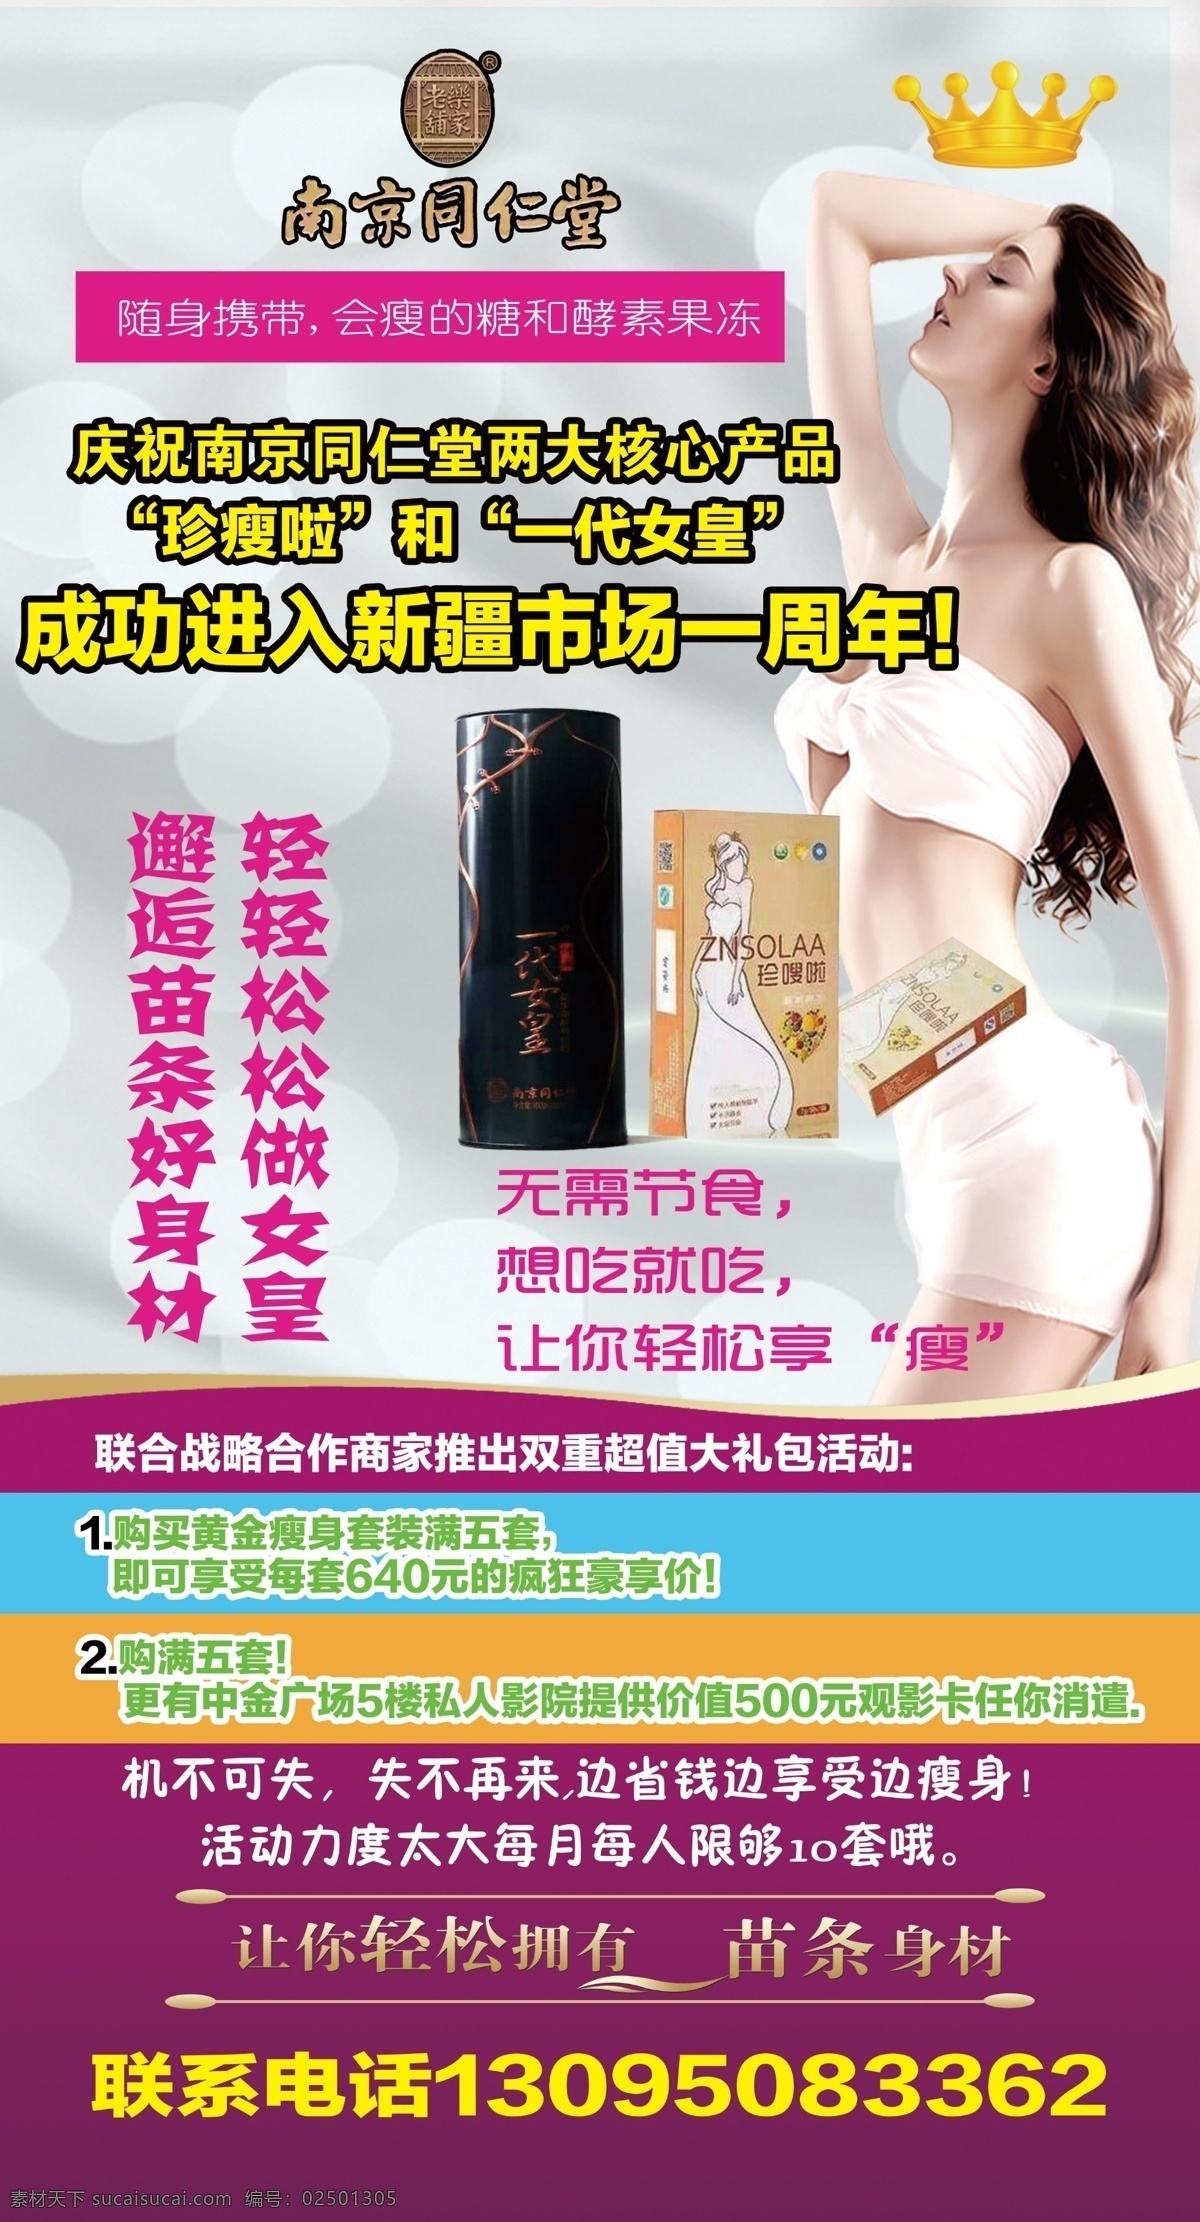 一代 女皇 减肥 广告 一代女皇 减肥广告 瘦身广告 南京同仁堂 瘦身一代女皇